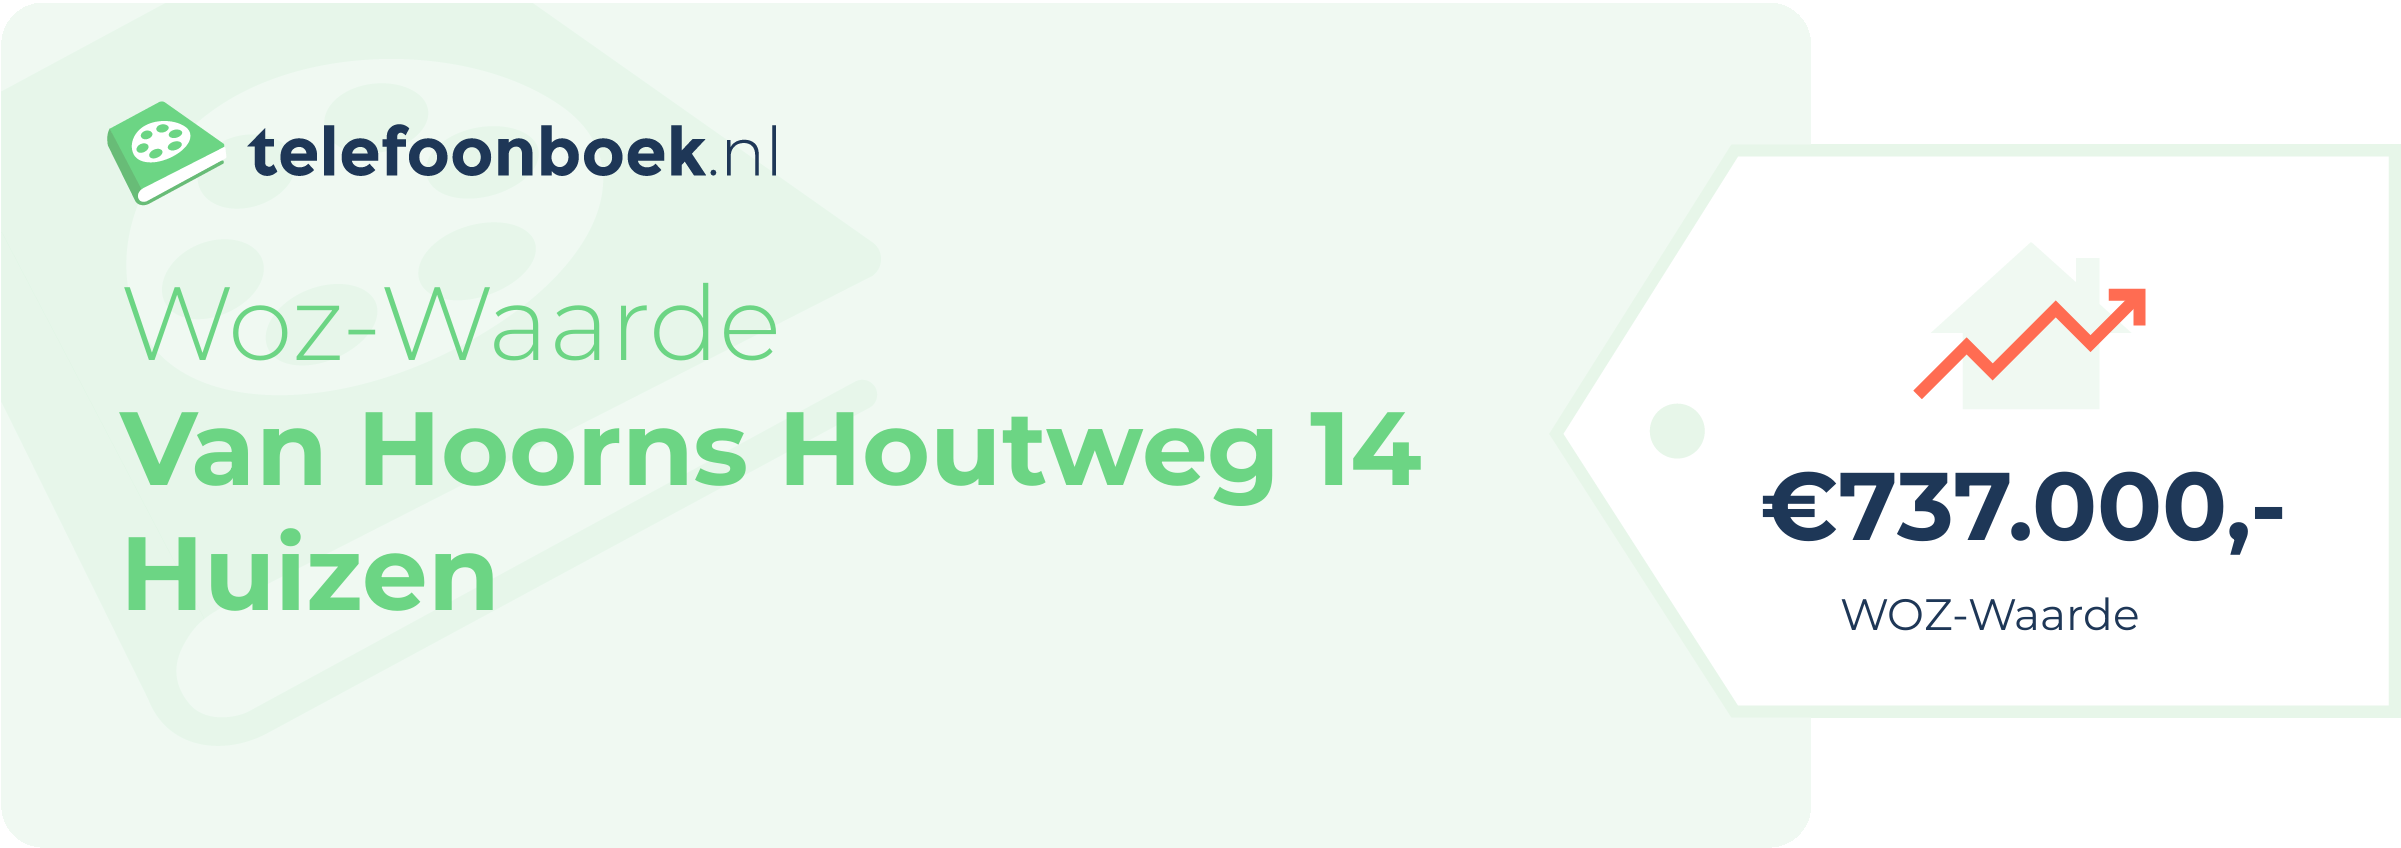 WOZ-waarde Van Hoorns Houtweg 14 Huizen